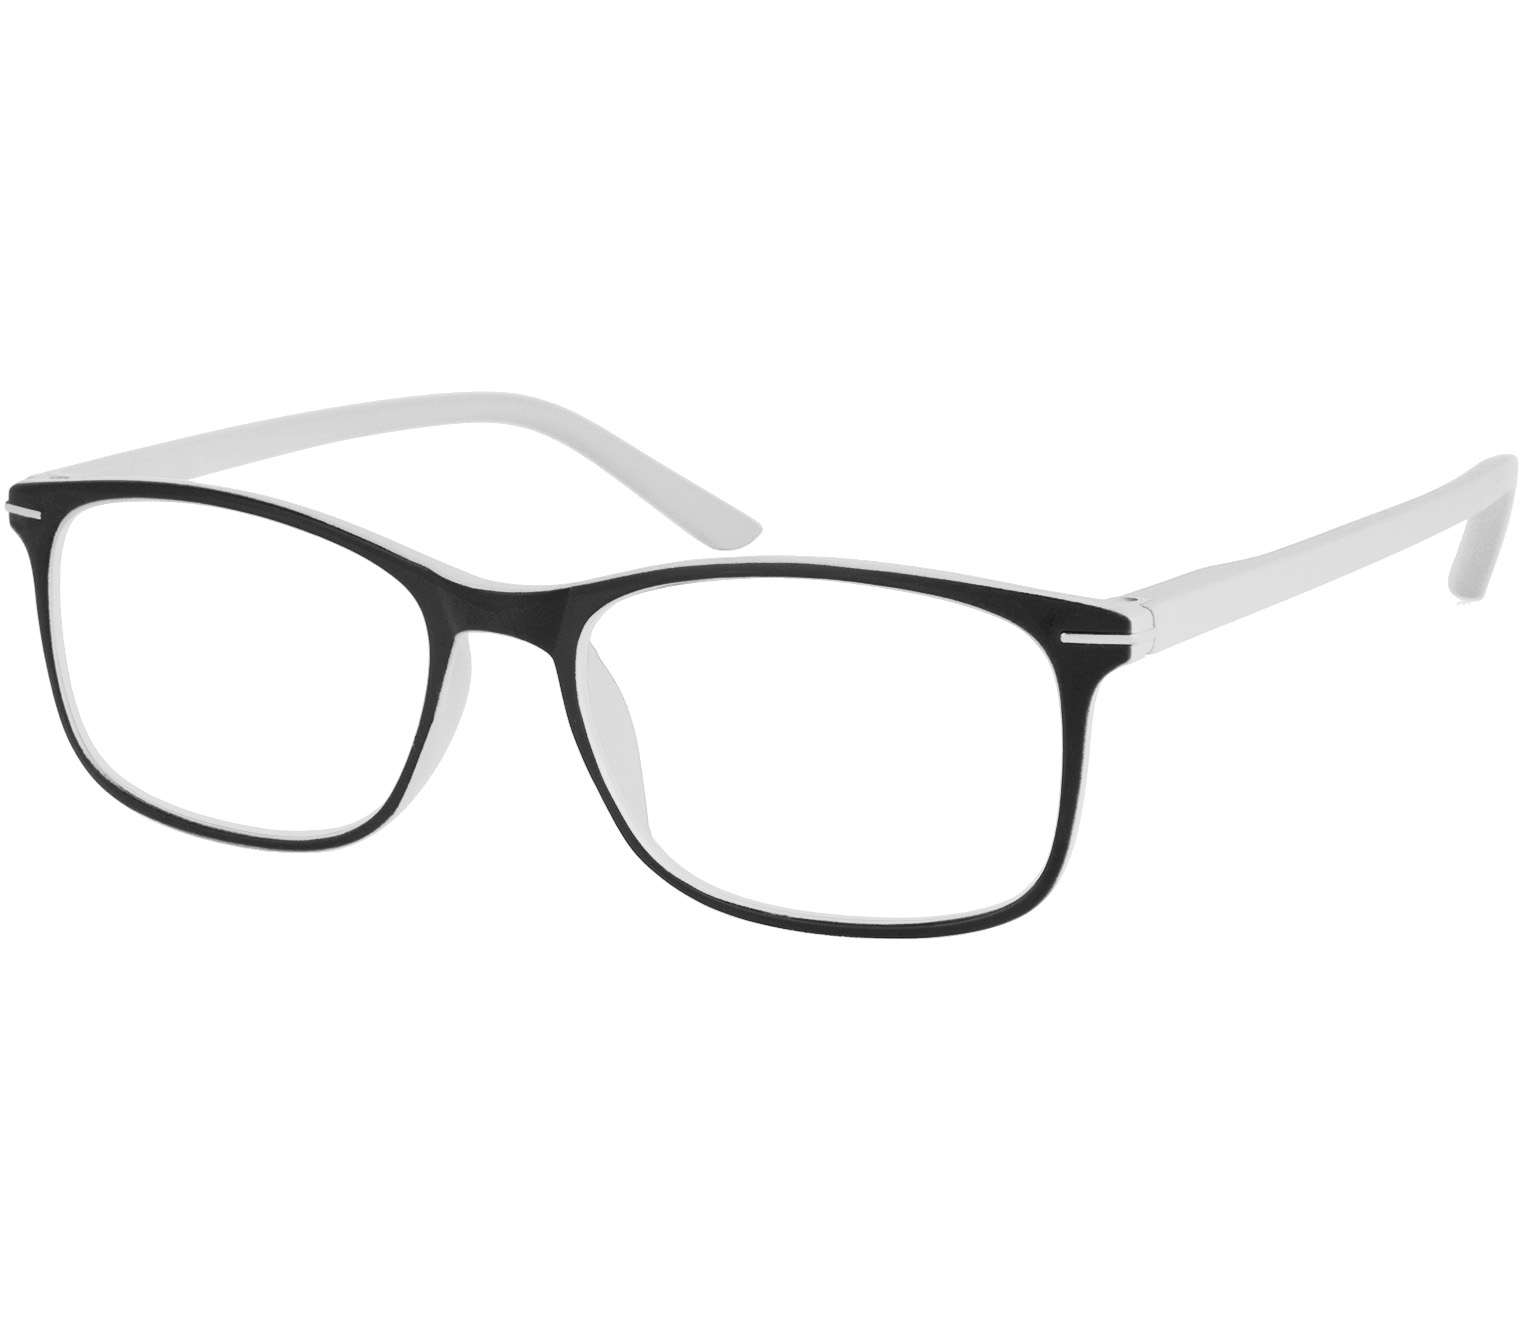 Main Image (Angle) - Jazz (White) Classic Reading Glasses